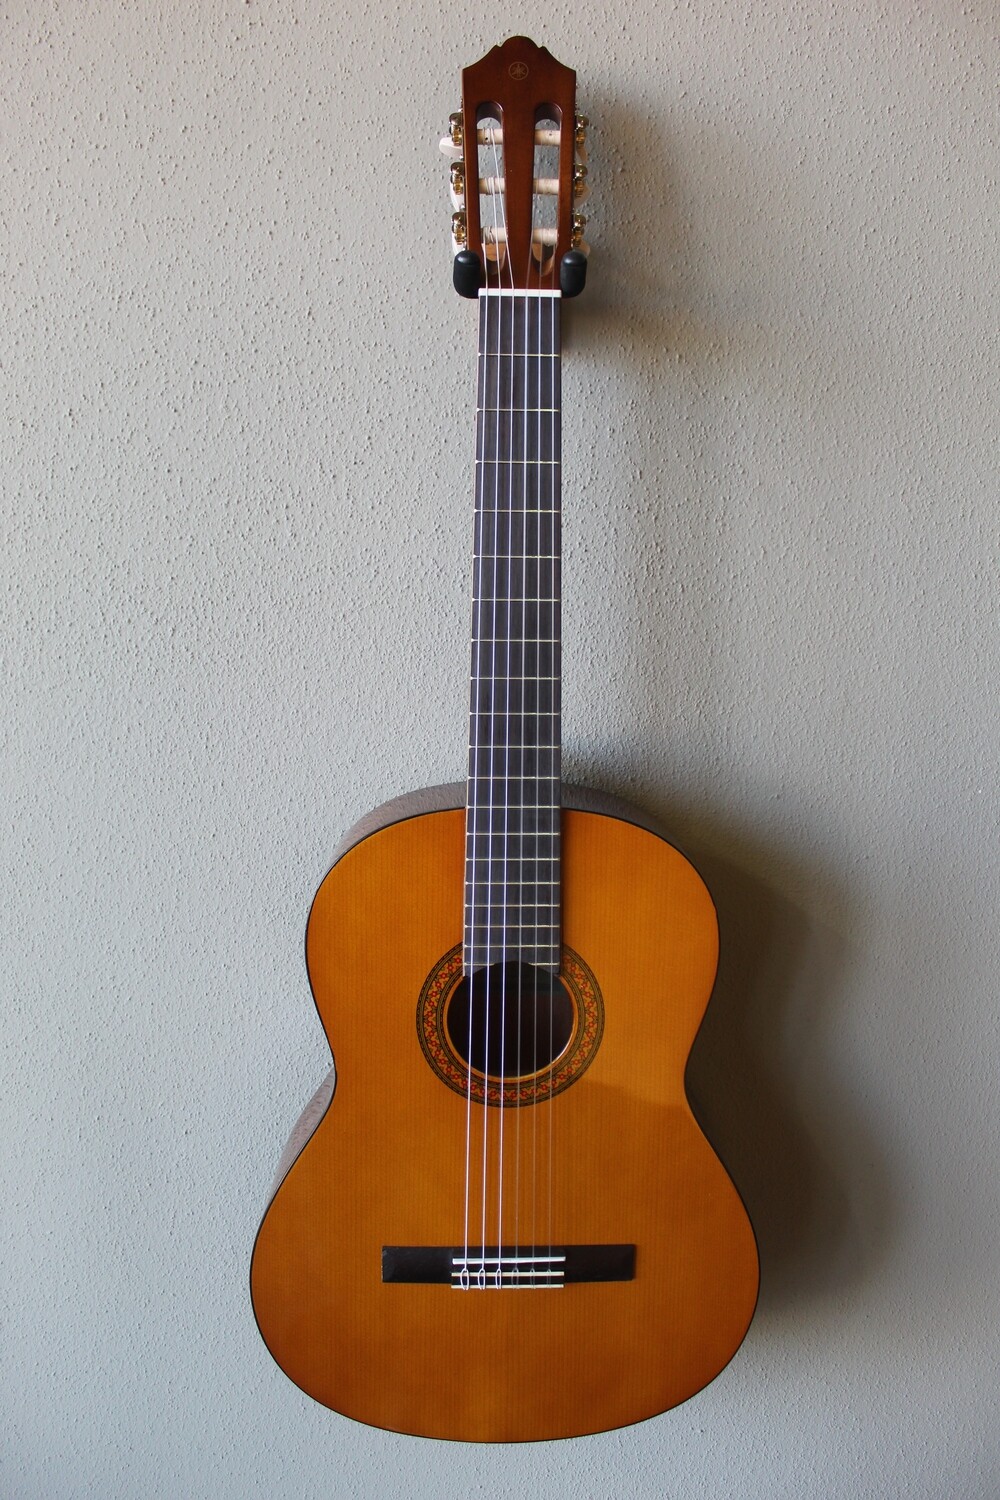 Yamaha C40 Nylon String Classical Guitar with Gig Bag